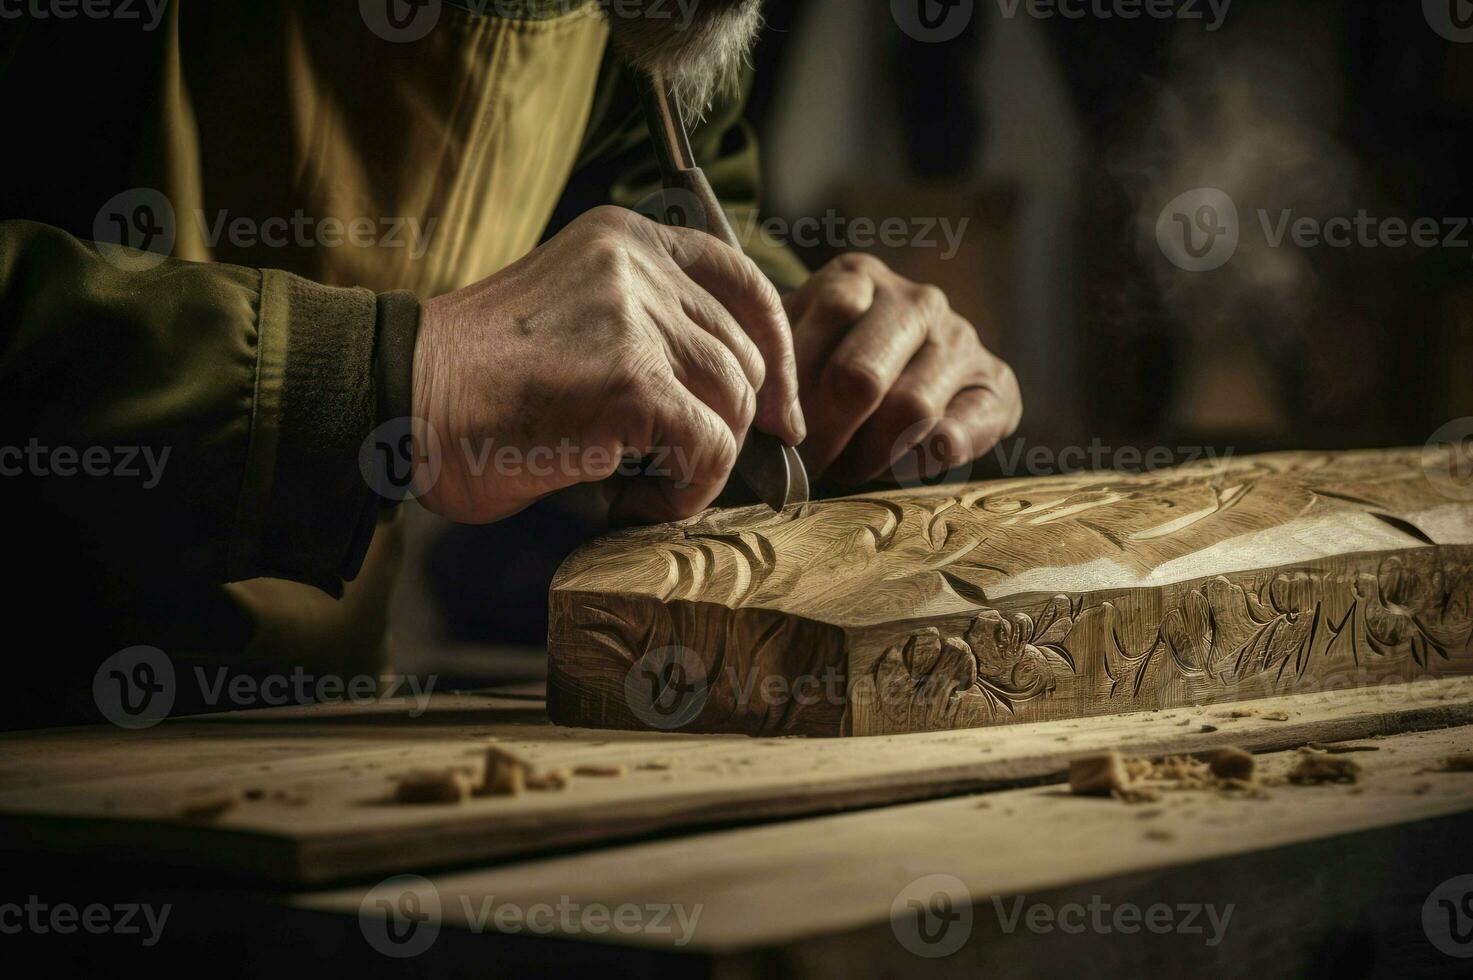 qualificato artigiano Lavorando con Di legno. creare ai foto